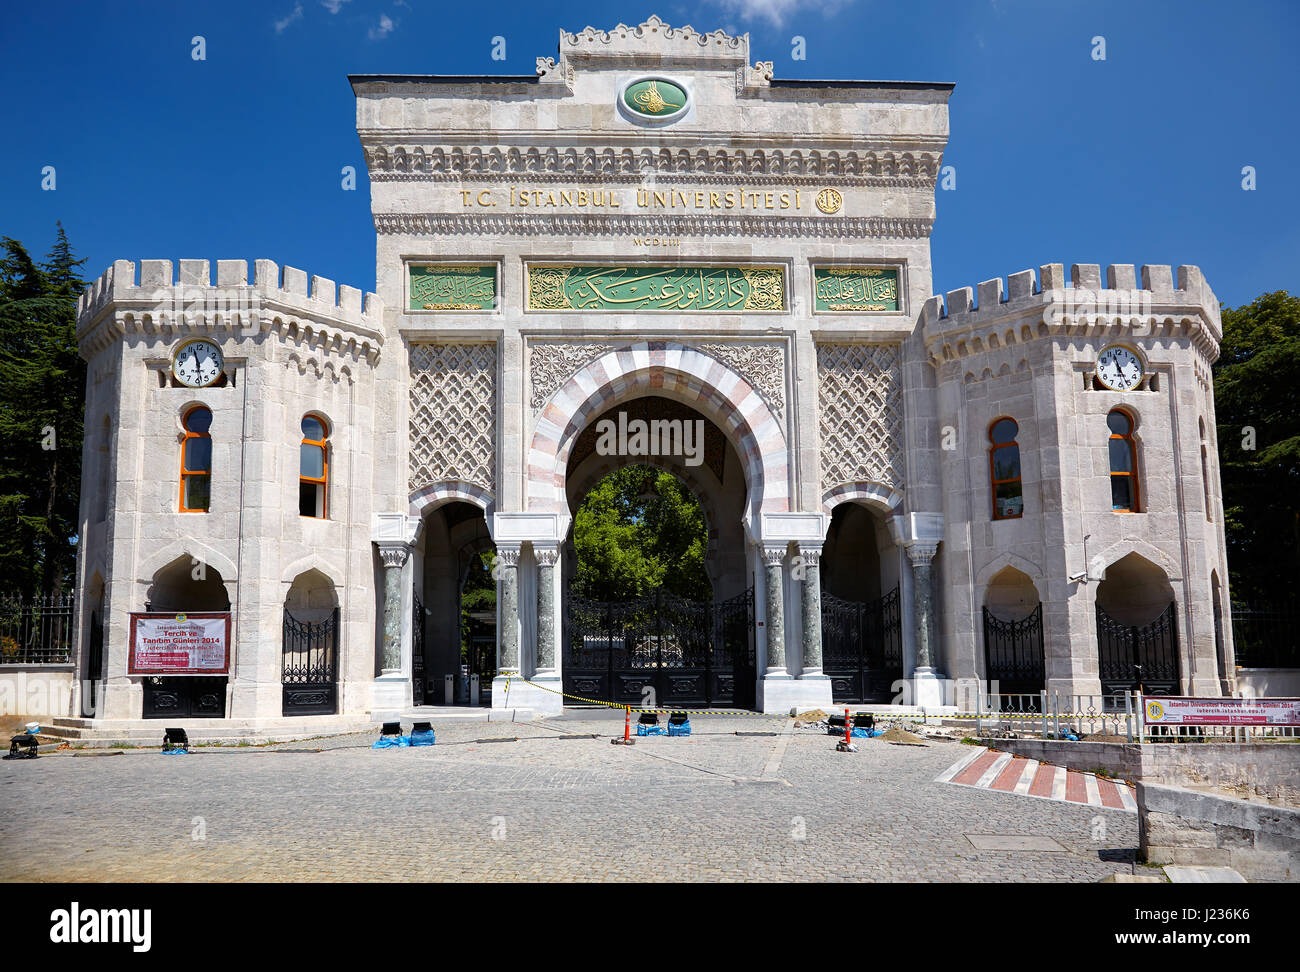 ISTANBUL, Türkei - 14. Juli 2014: Die gewölbten monumentale maurischen Stil Tor der Istanbuler Universität am Beyazit-Platz, Istanbul, Türkei Stockfoto